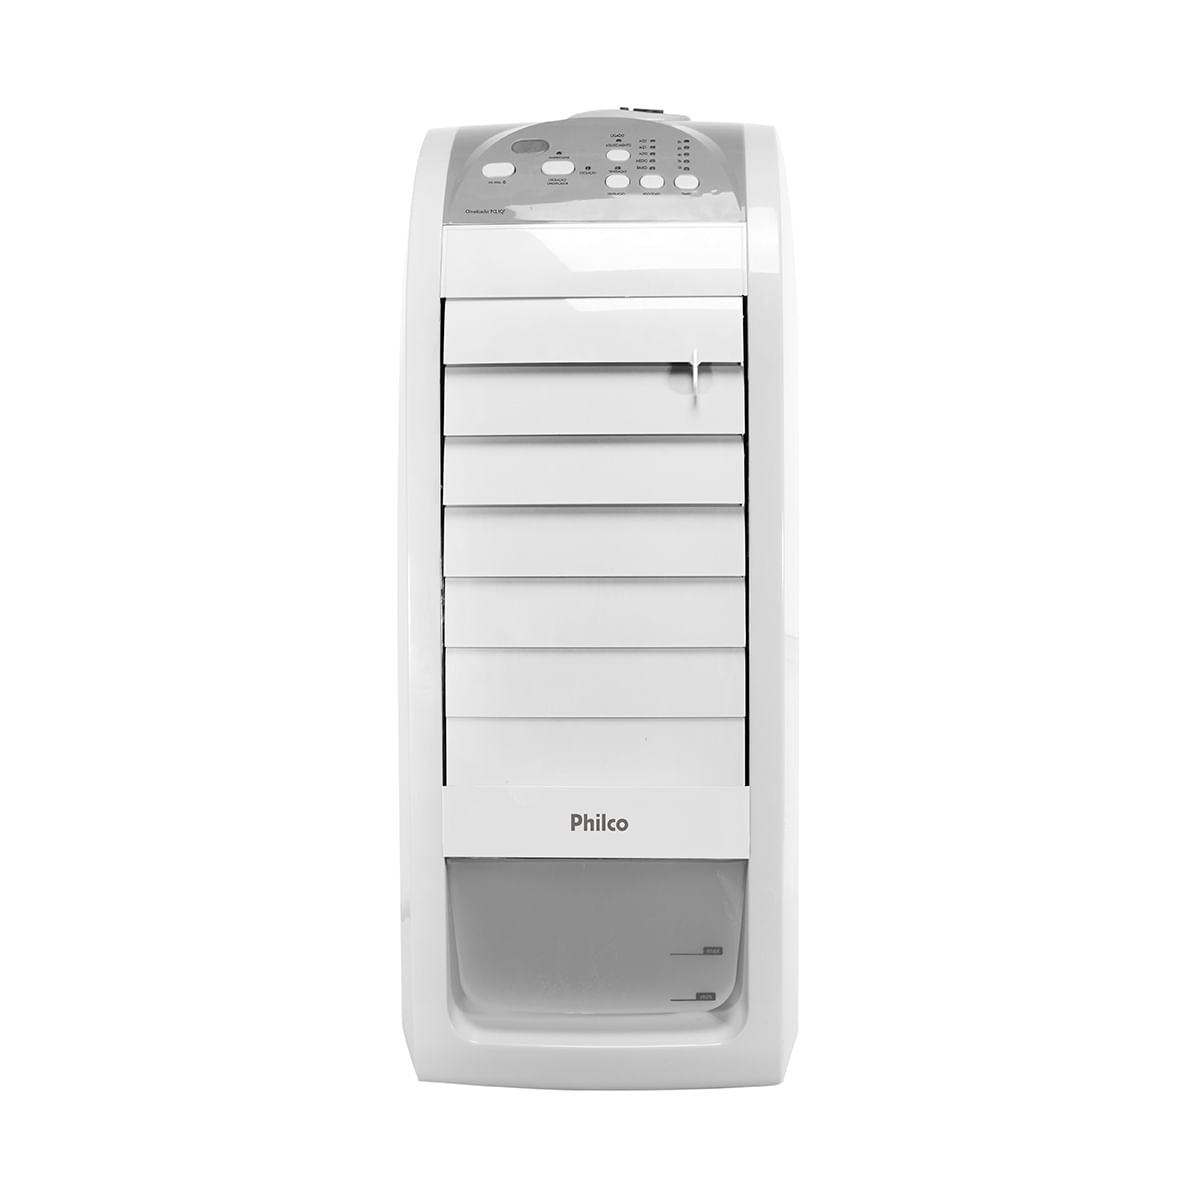 climatizador-de-ar-philco-quente-e-frio-ventila-umidifica-e-aquece-pcl01qf-branco-220v-1.jpg